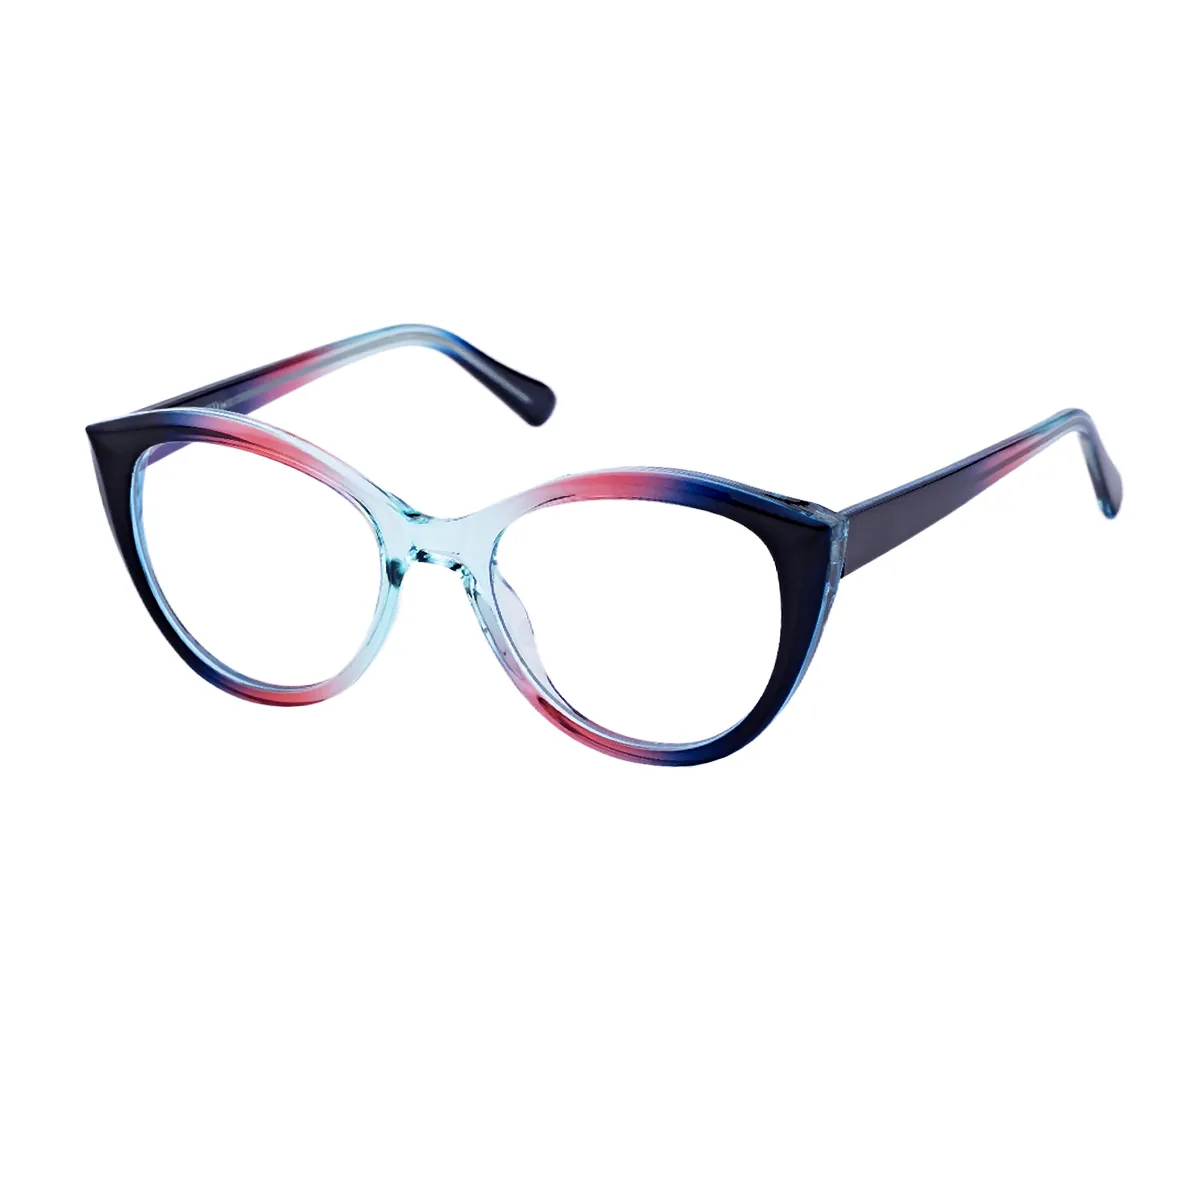 Griselda - Cat-eye  Glasses for Women